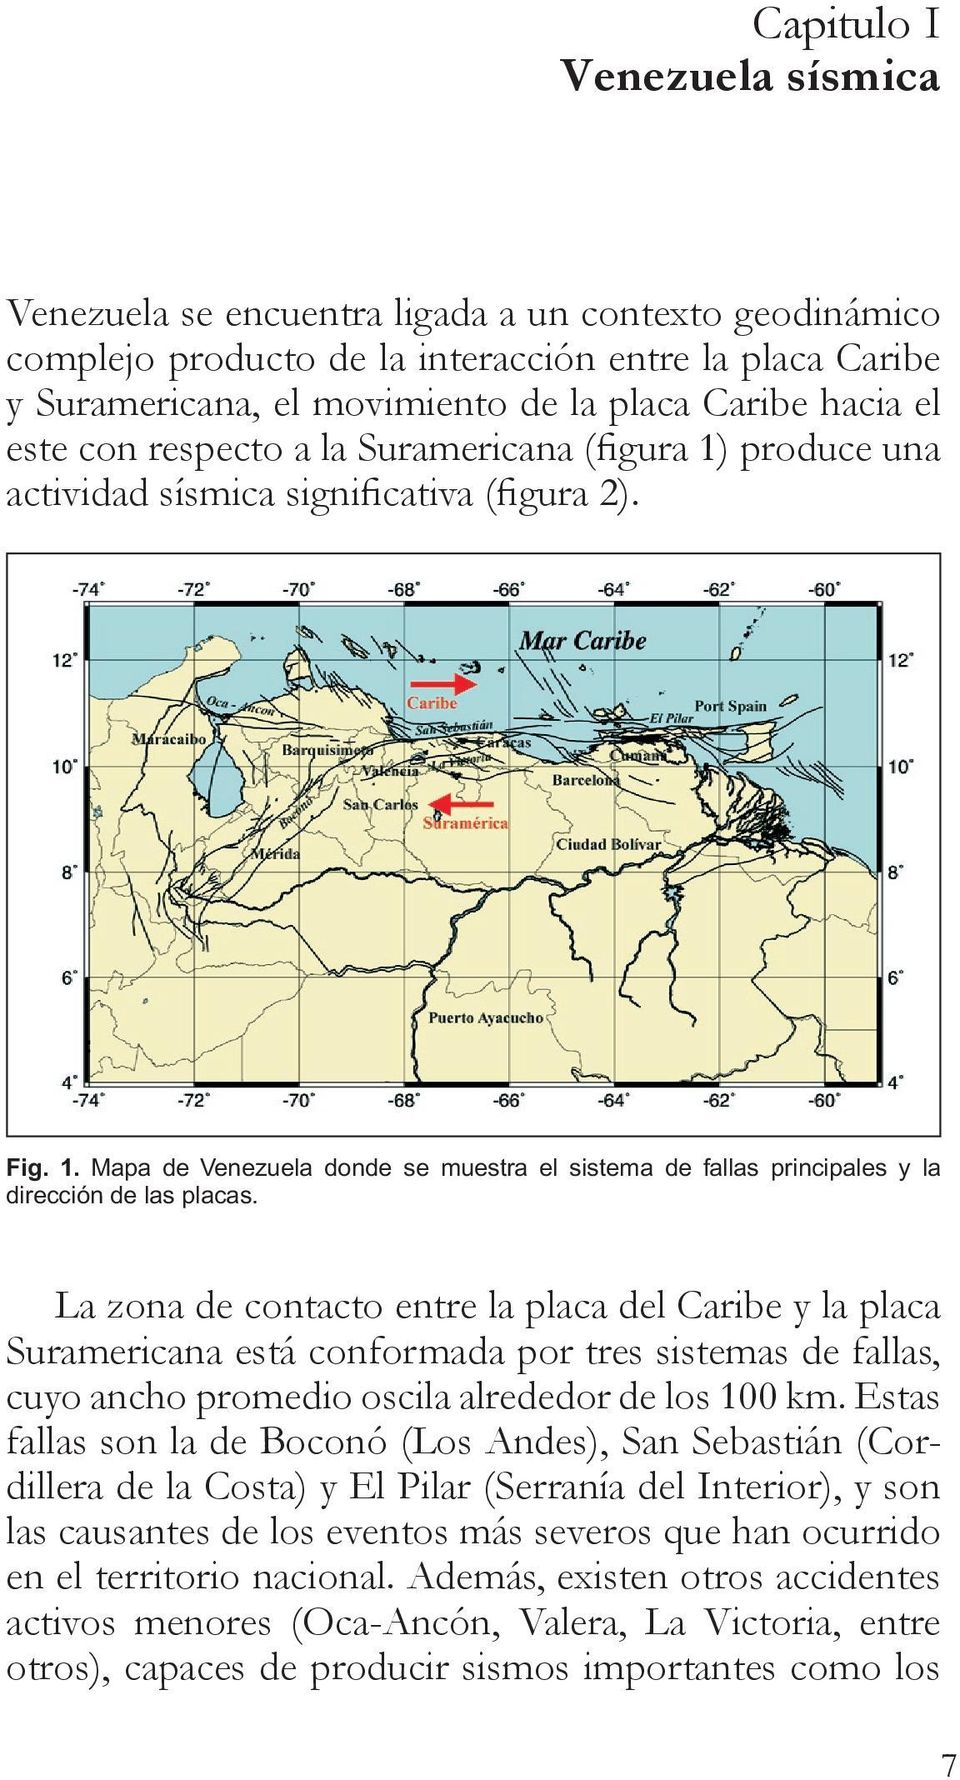 La zona de contacto entre la placa del Caribe y la placa Suramericana está conformada por tres sistemas de fallas, cuyo ancho promedio oscila alrededor de los 100 km.